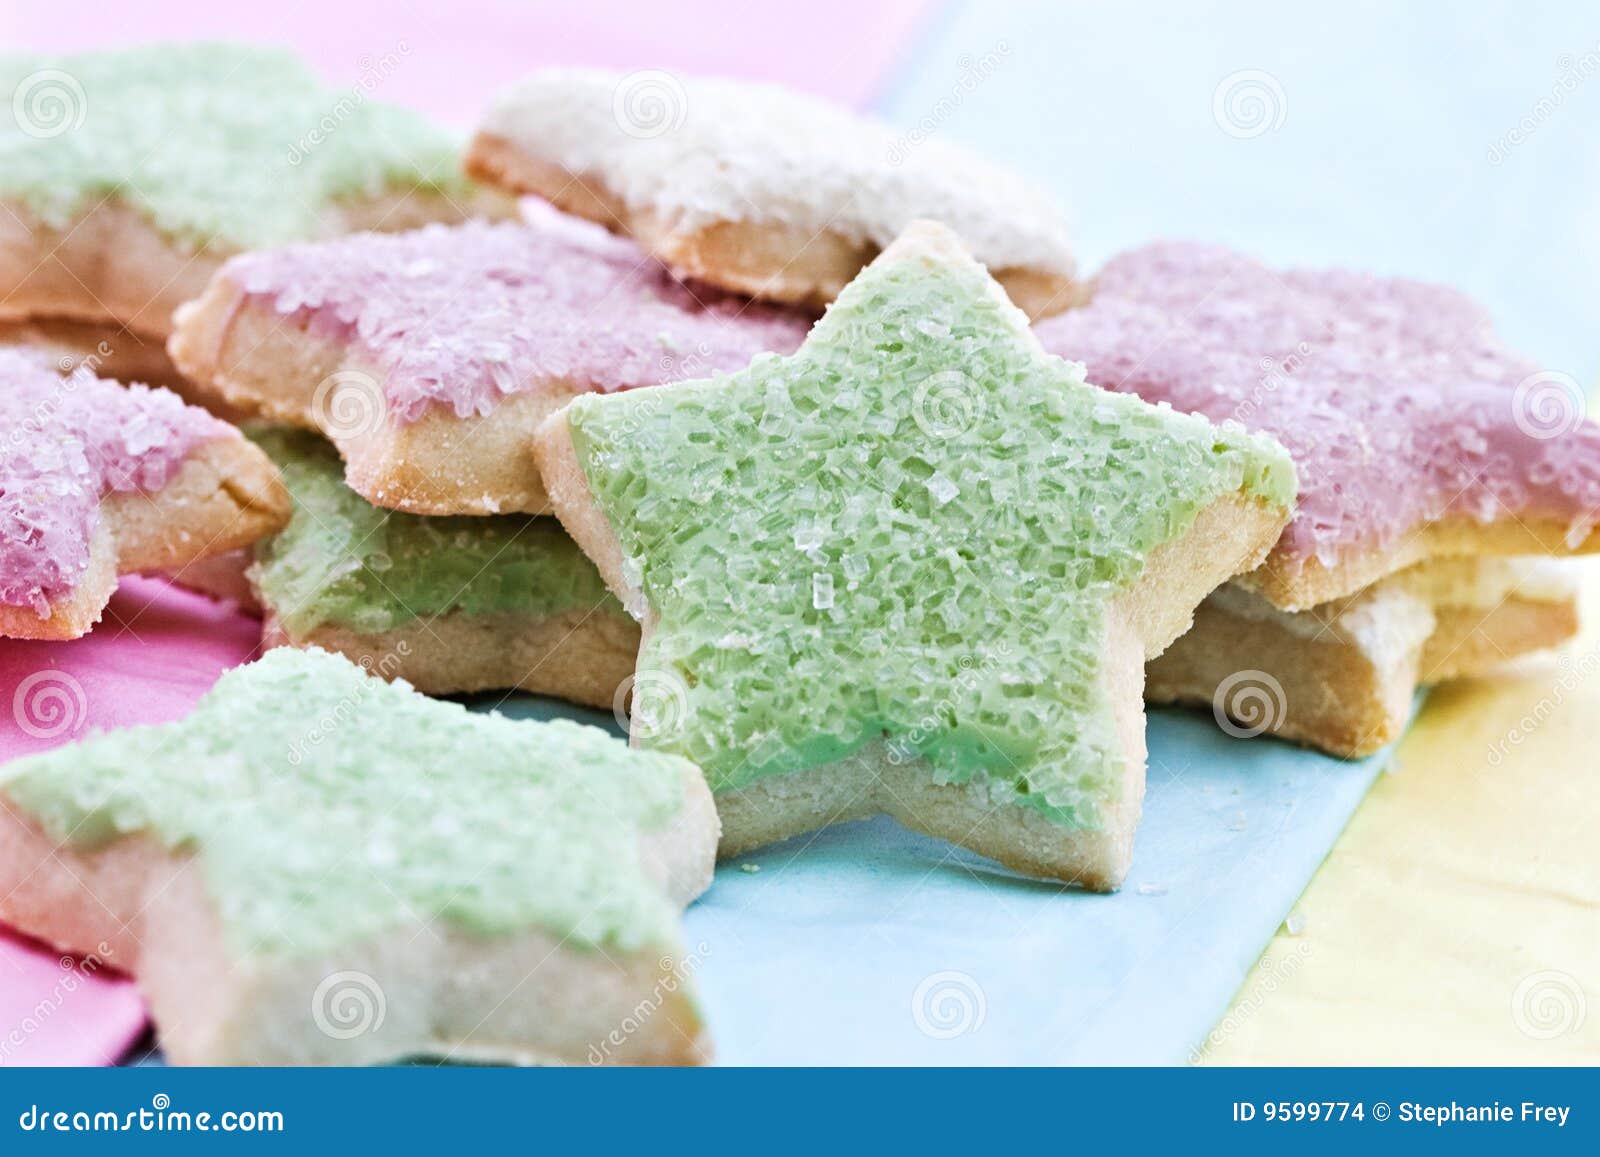 star-shaped-cookies-9599774.jpg